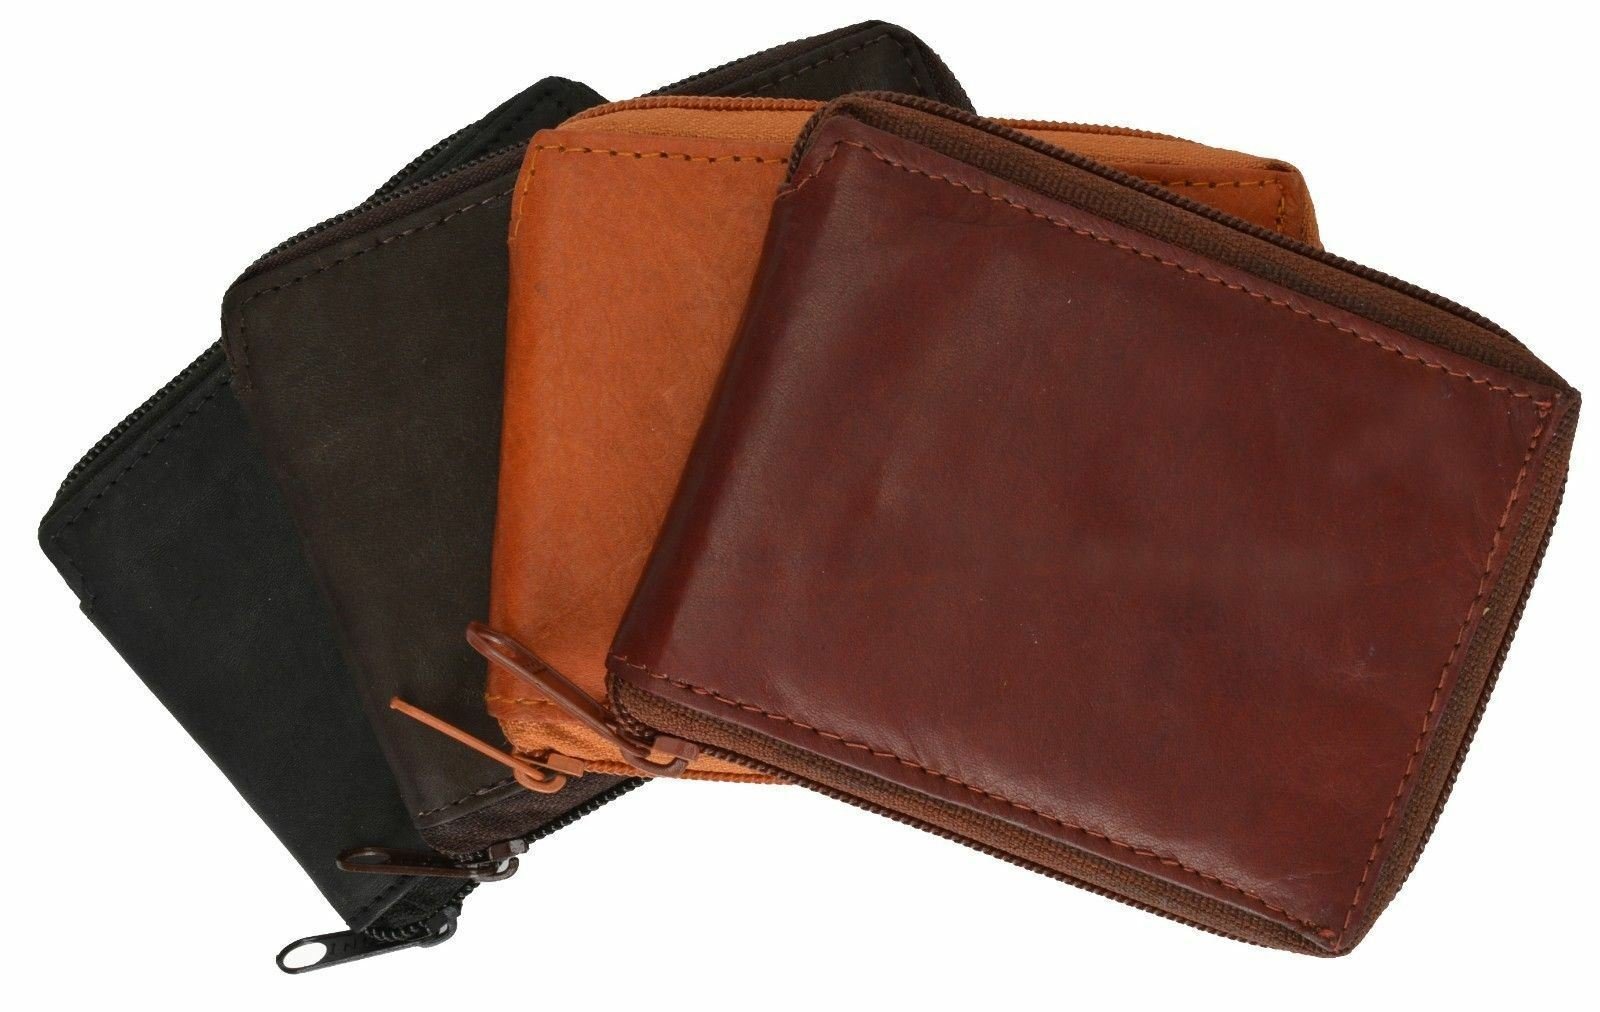 Men's Genuine Leather Zipper Zip-Around Organizer Bifold Wallet Black Brown Tan!